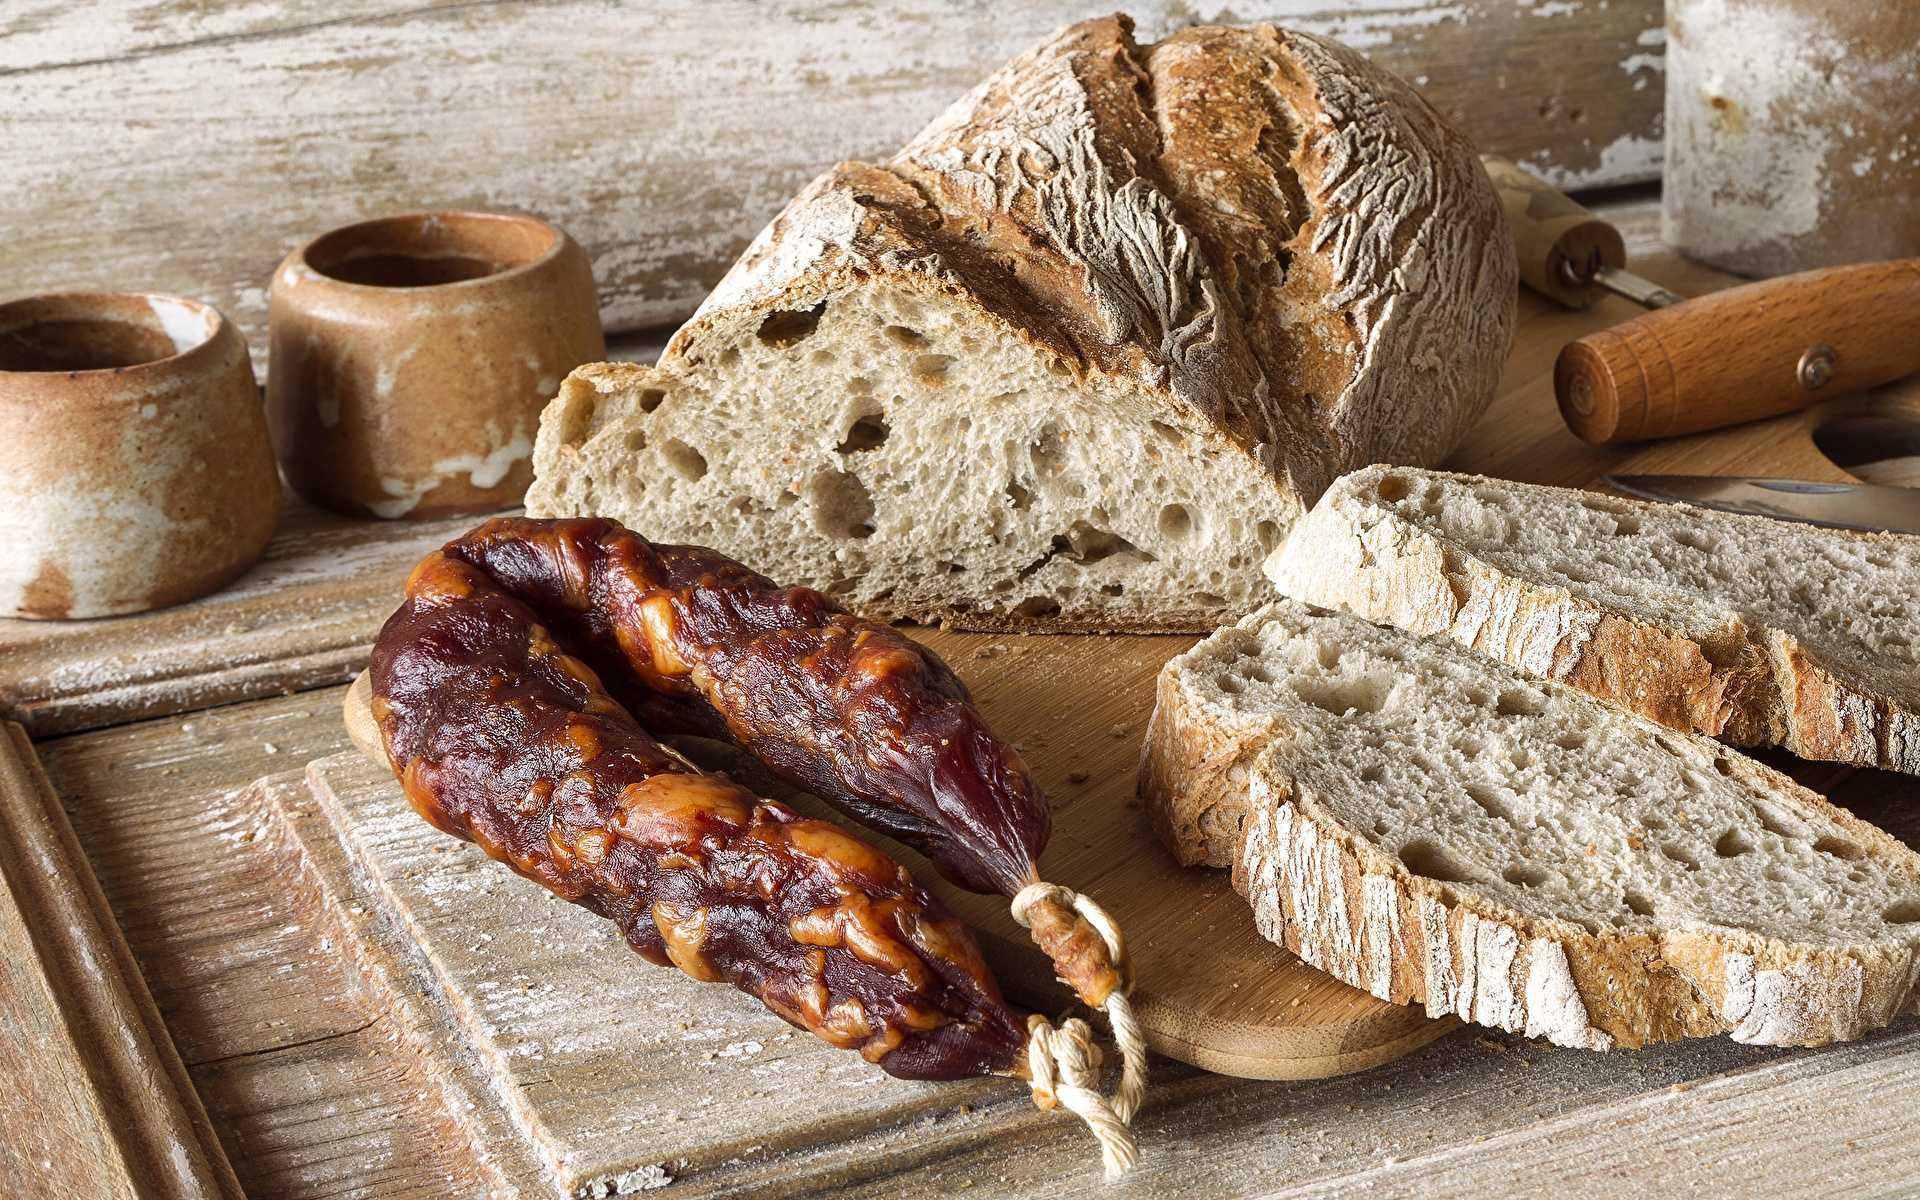 Салями, хлеб: какие продукты можно есть, убрав плесень, а какие стоит выбросить